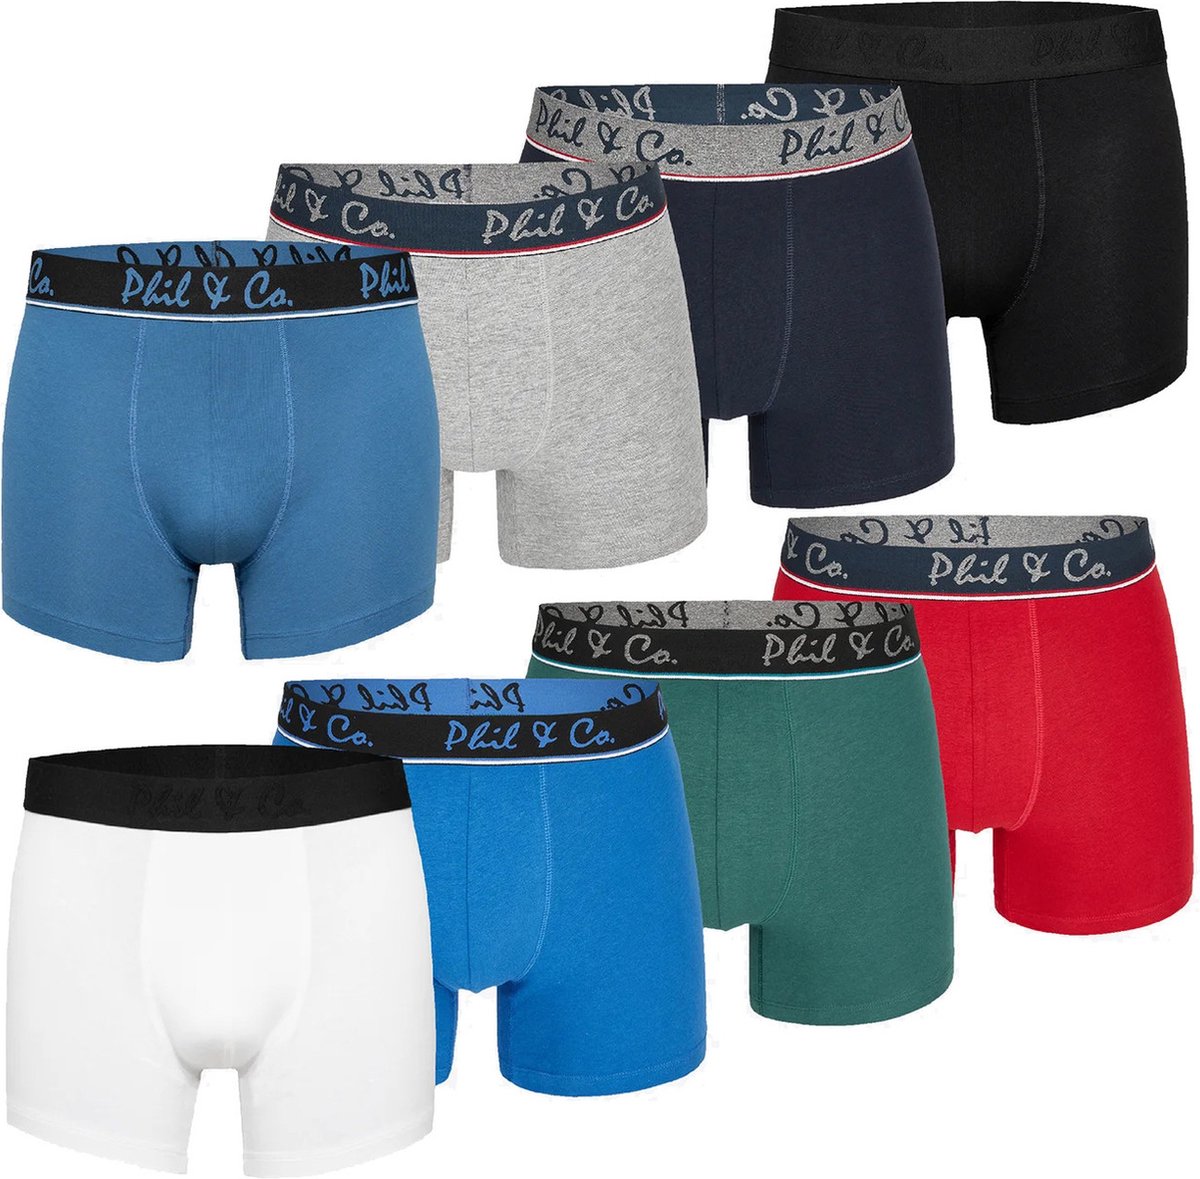 Phil & Co Boxershorts Heren 8-Pack Multi Effen Kleuren - Maat L | Onderbroek